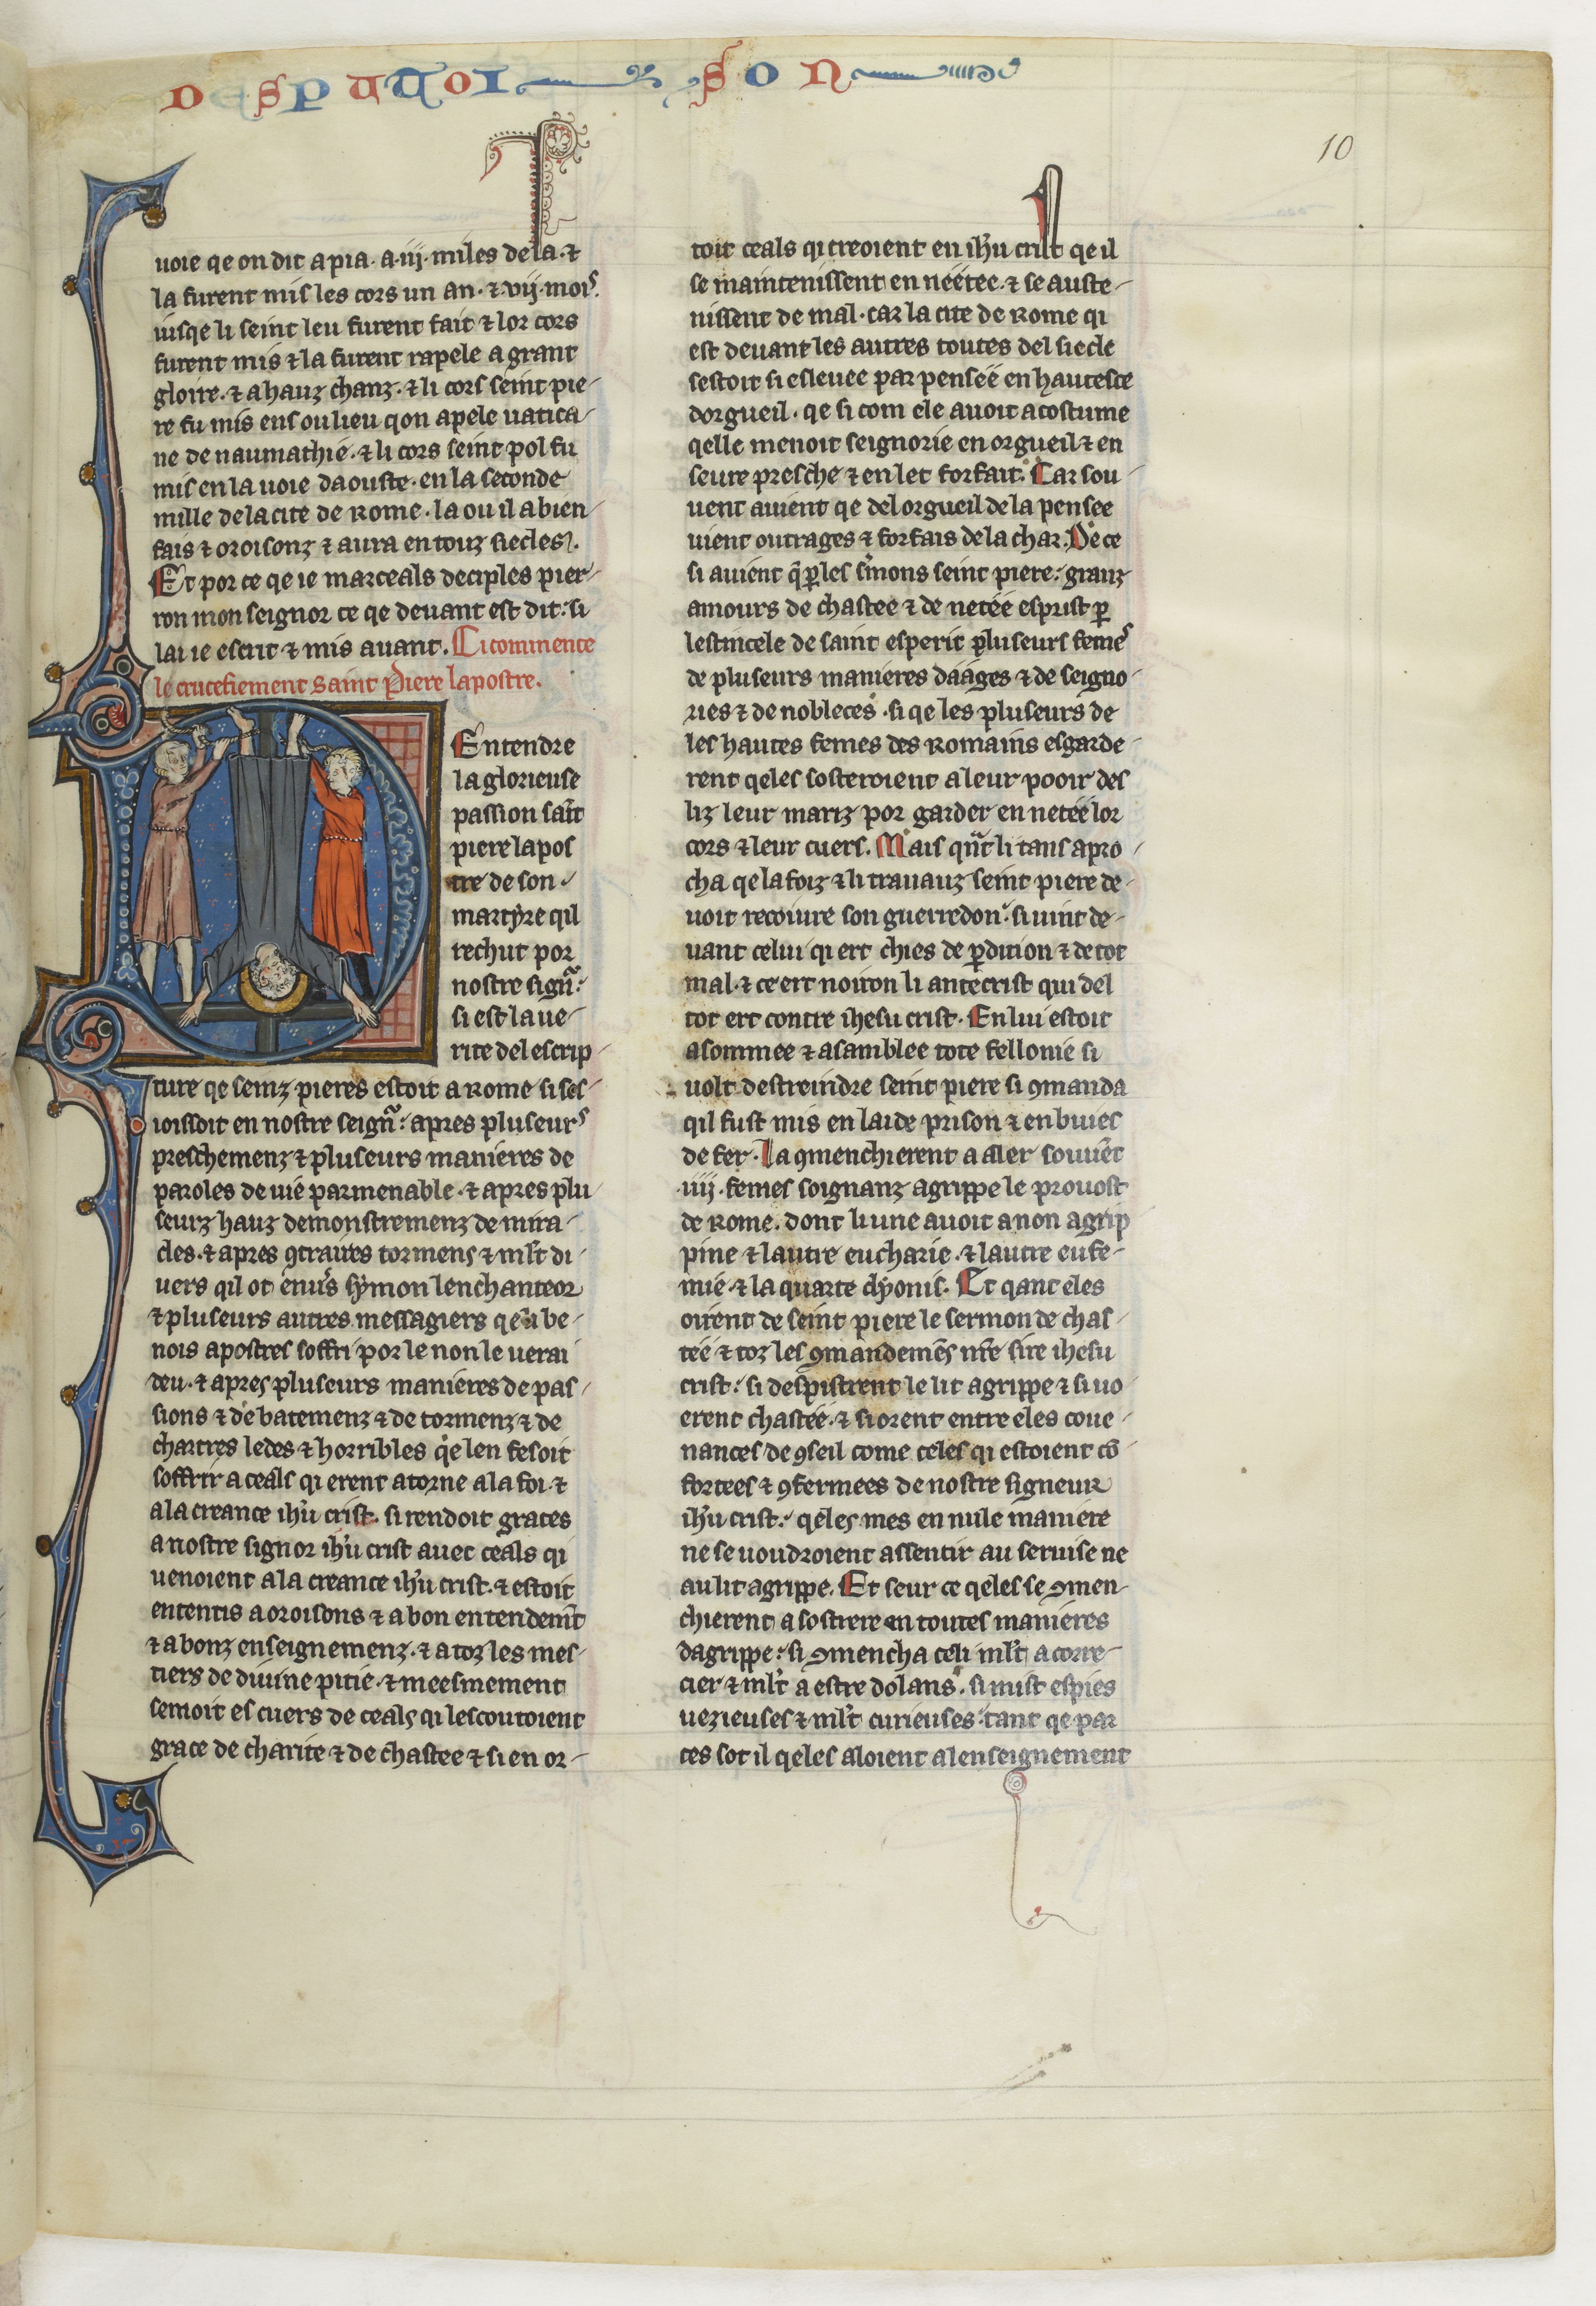 BNF, Fr. 412, f.10r.